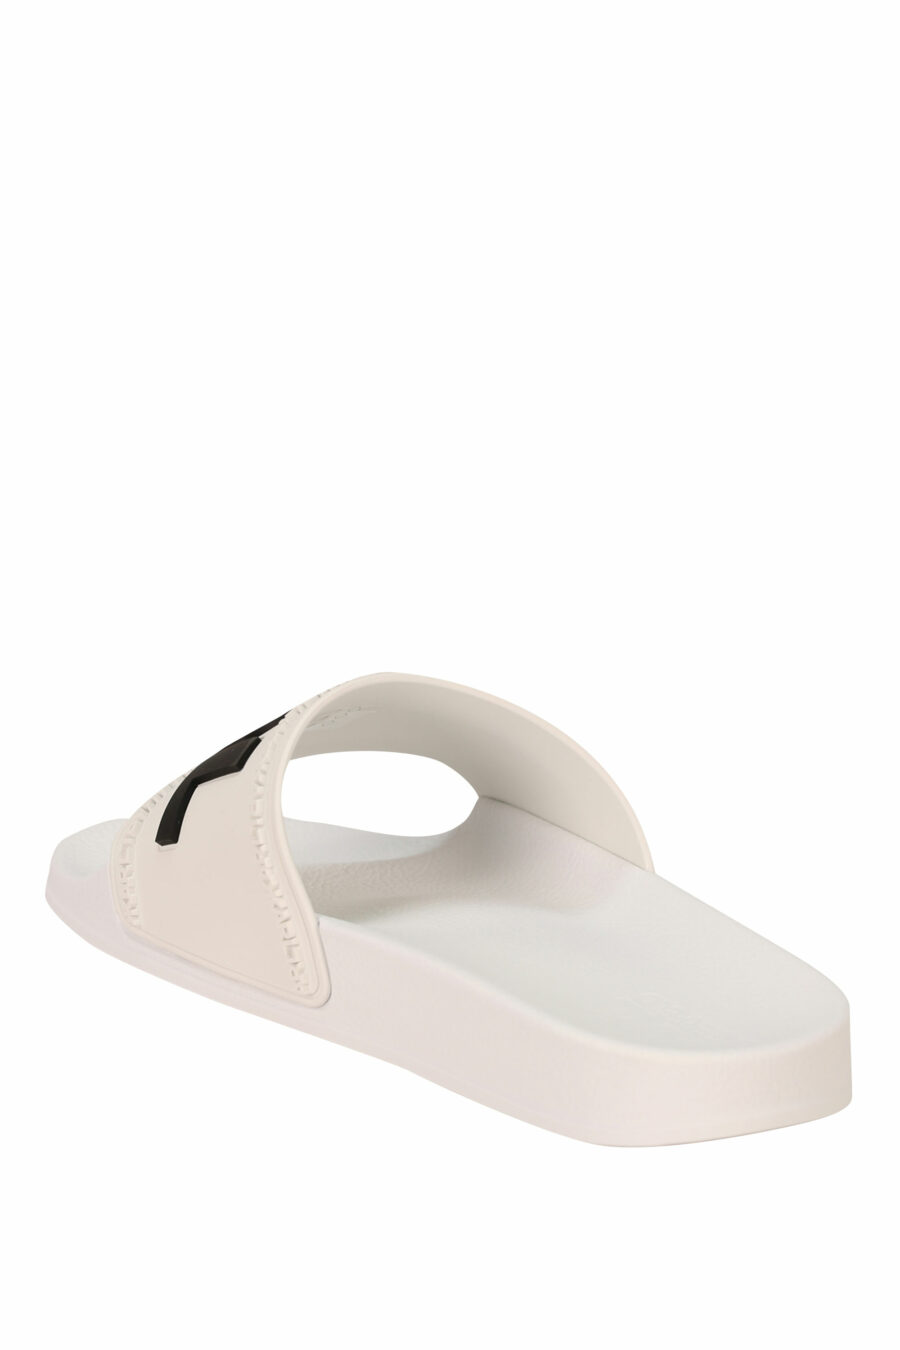 White rubber flip flops with black maxilogo - 5059529132230 3